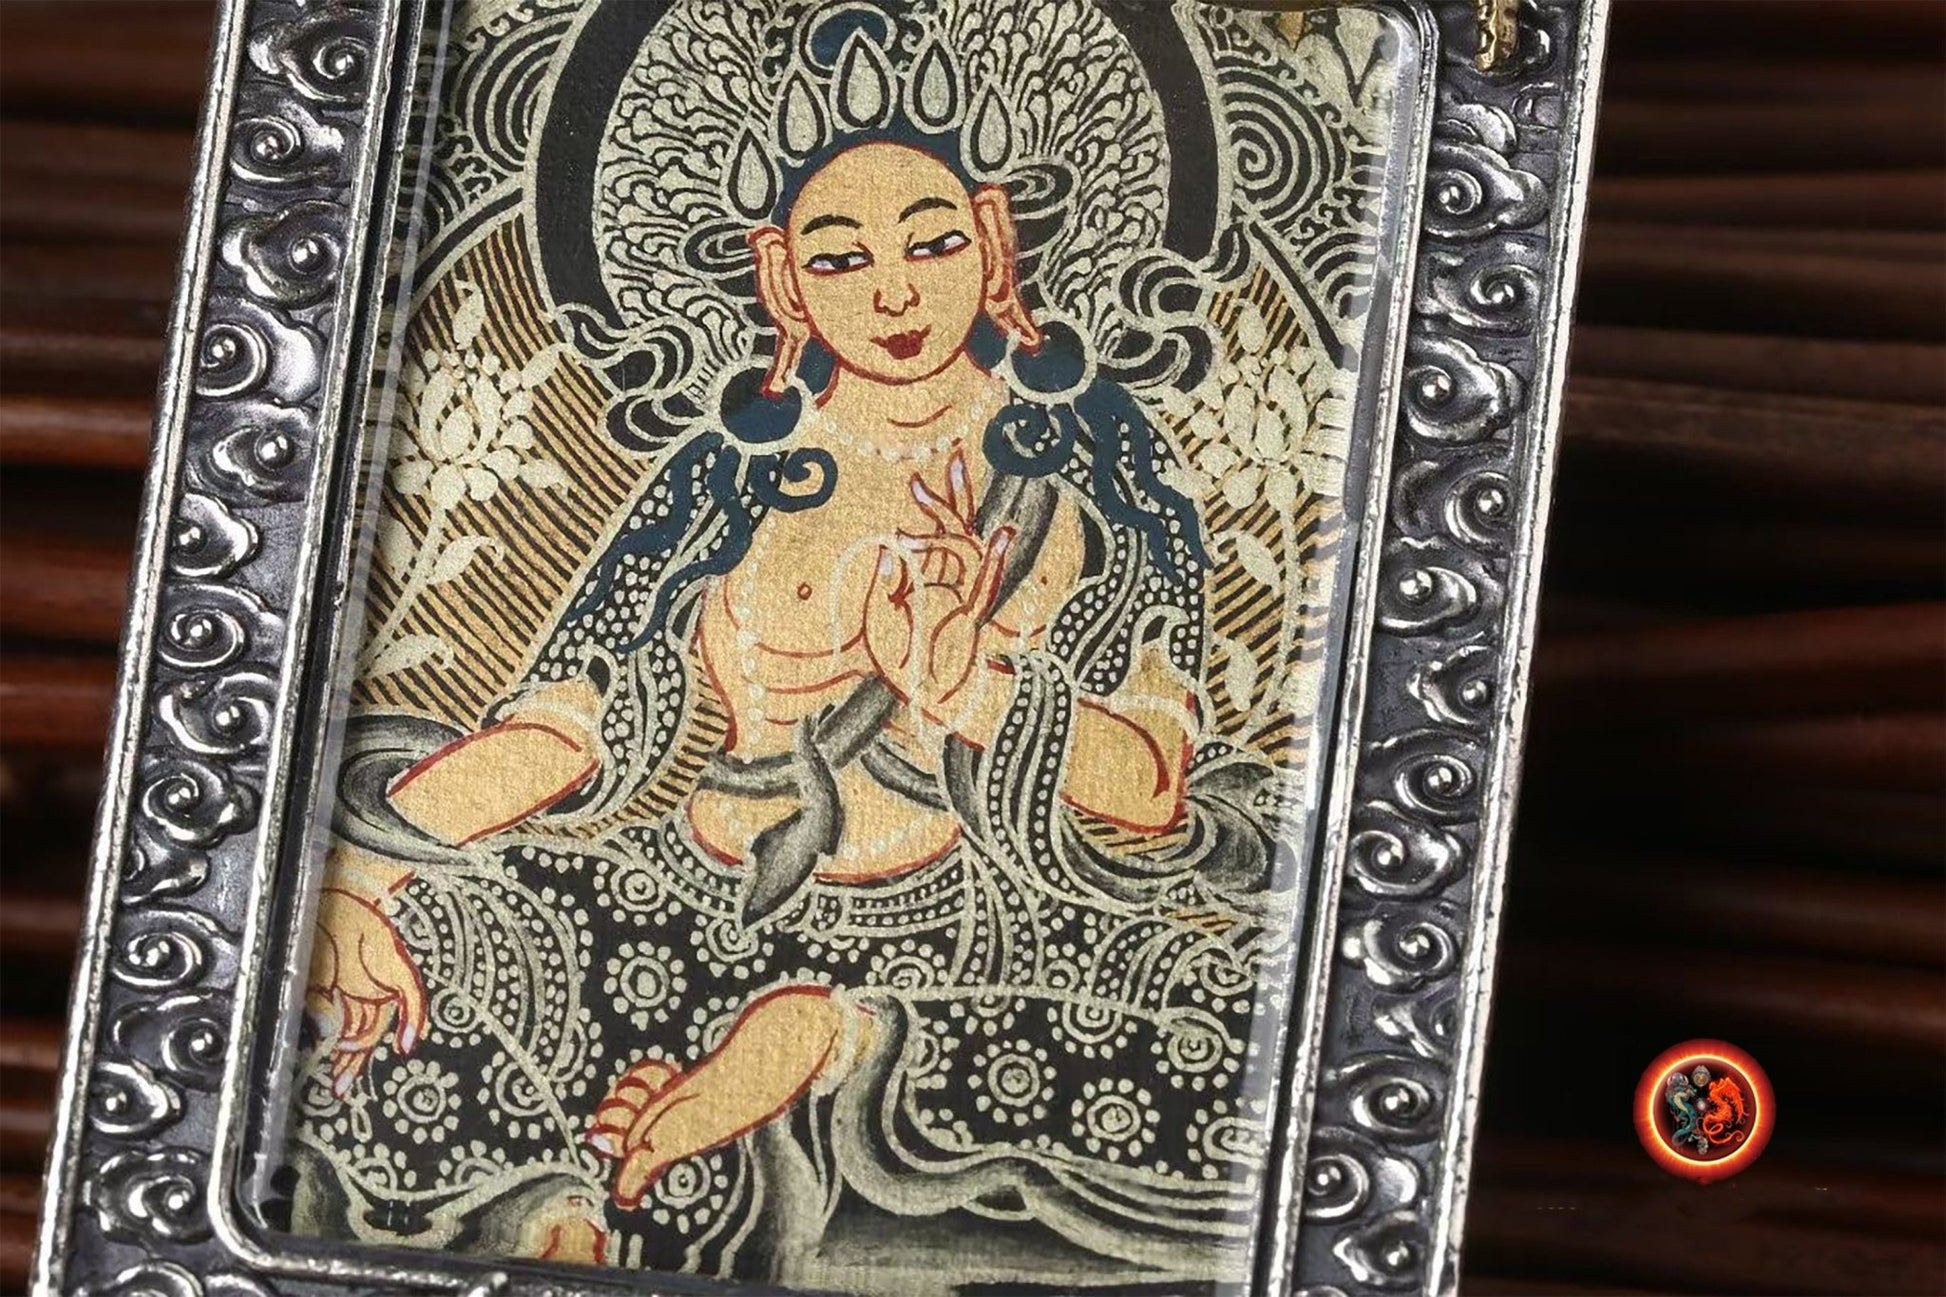 Pendentif bouddha, Amulette, reliquaire protection bouddhisme tibétain Tara verte argent 925, bronze. thangka peint à la main dorje tournant au verso. - obsidian dragon